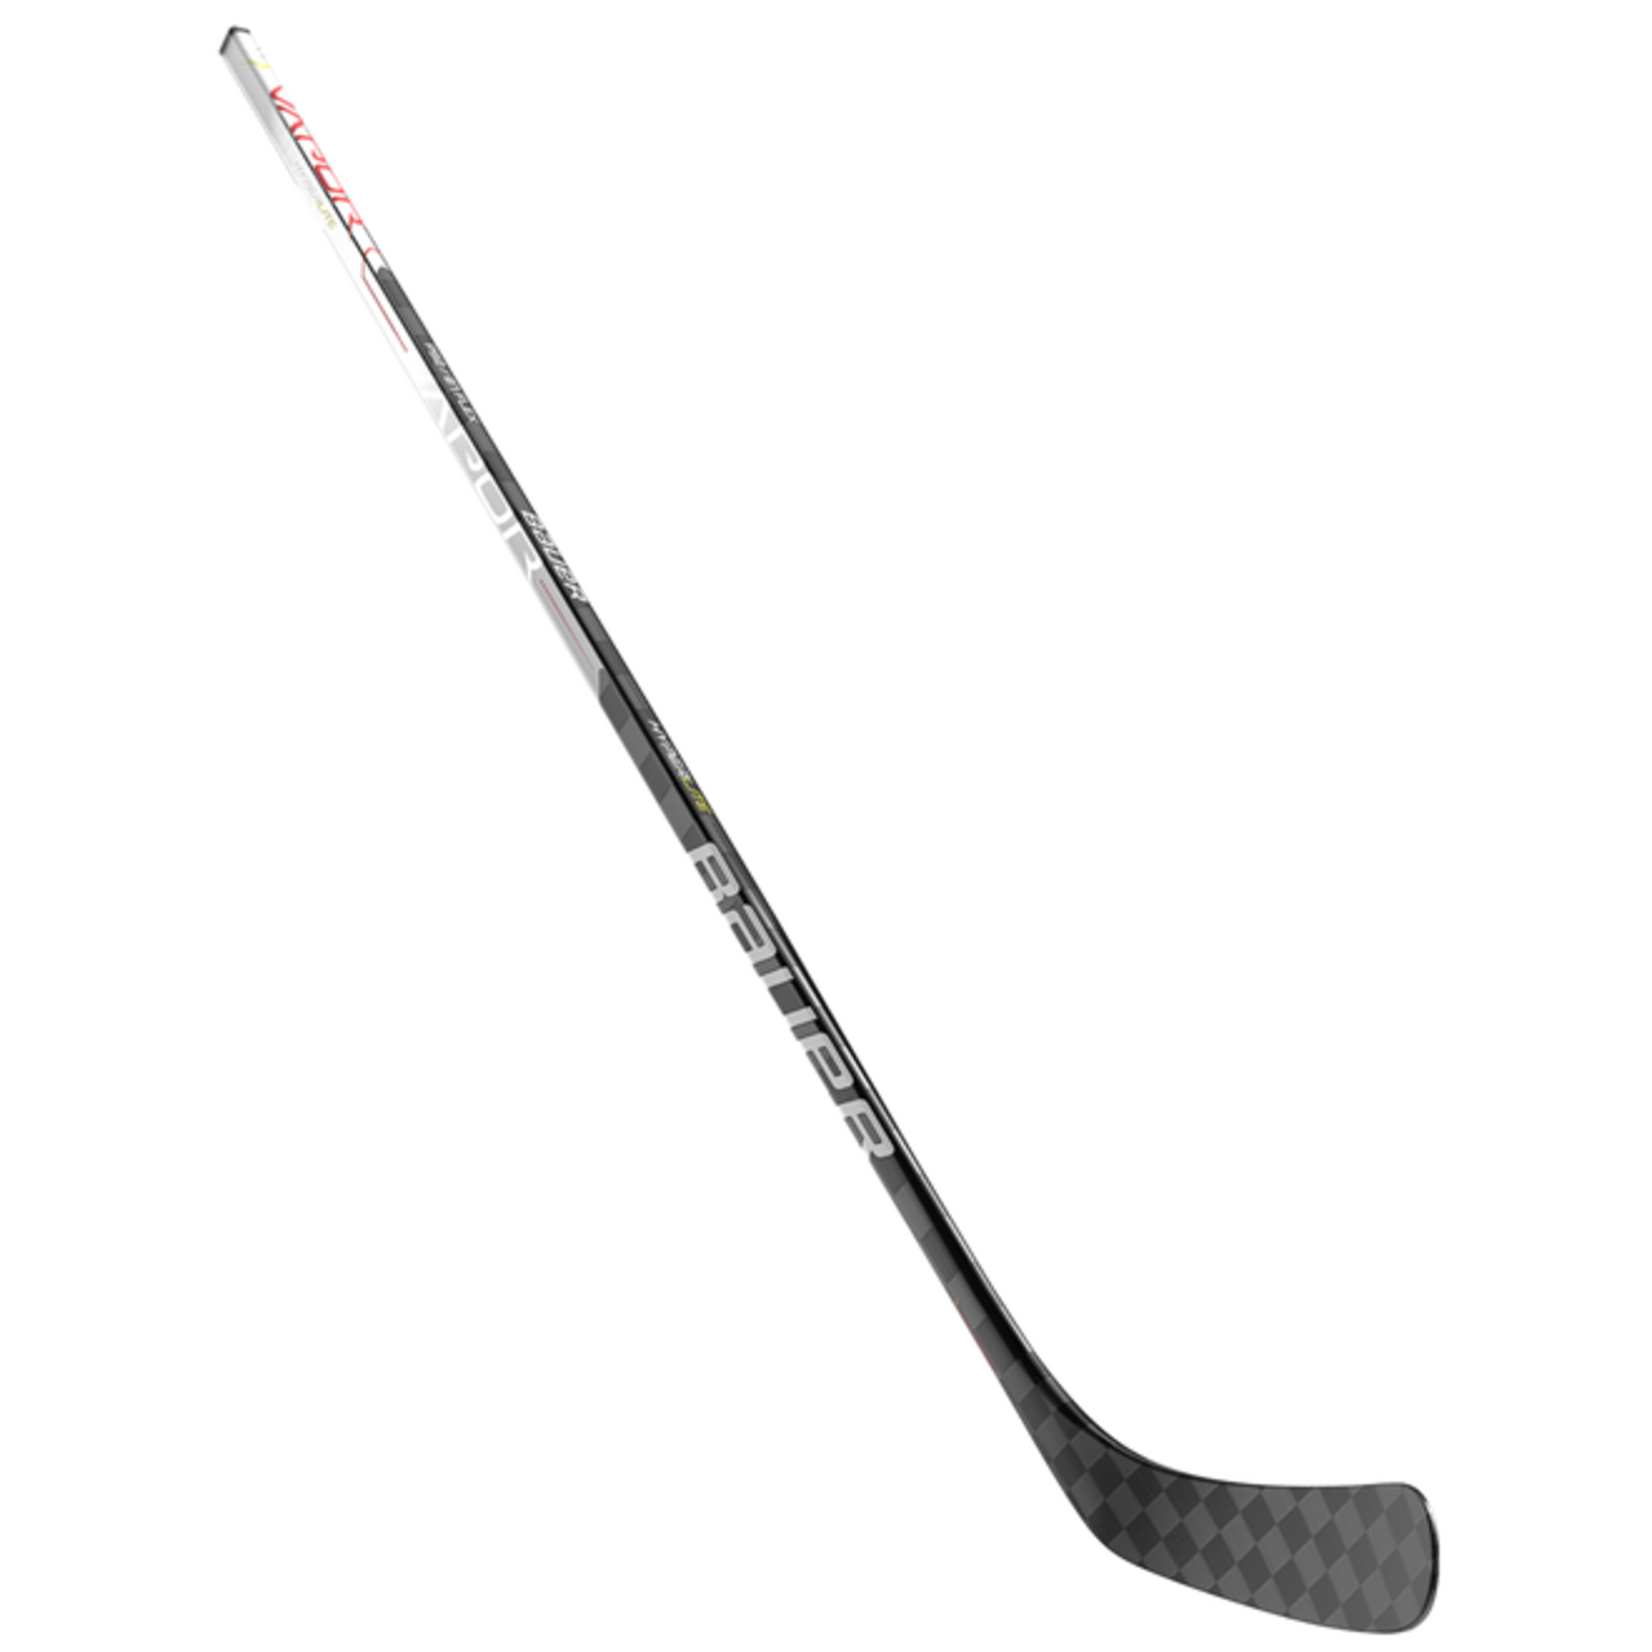 Bauer Bauer Hockey Stick, Vapor Hyperlite, Grip, Youth